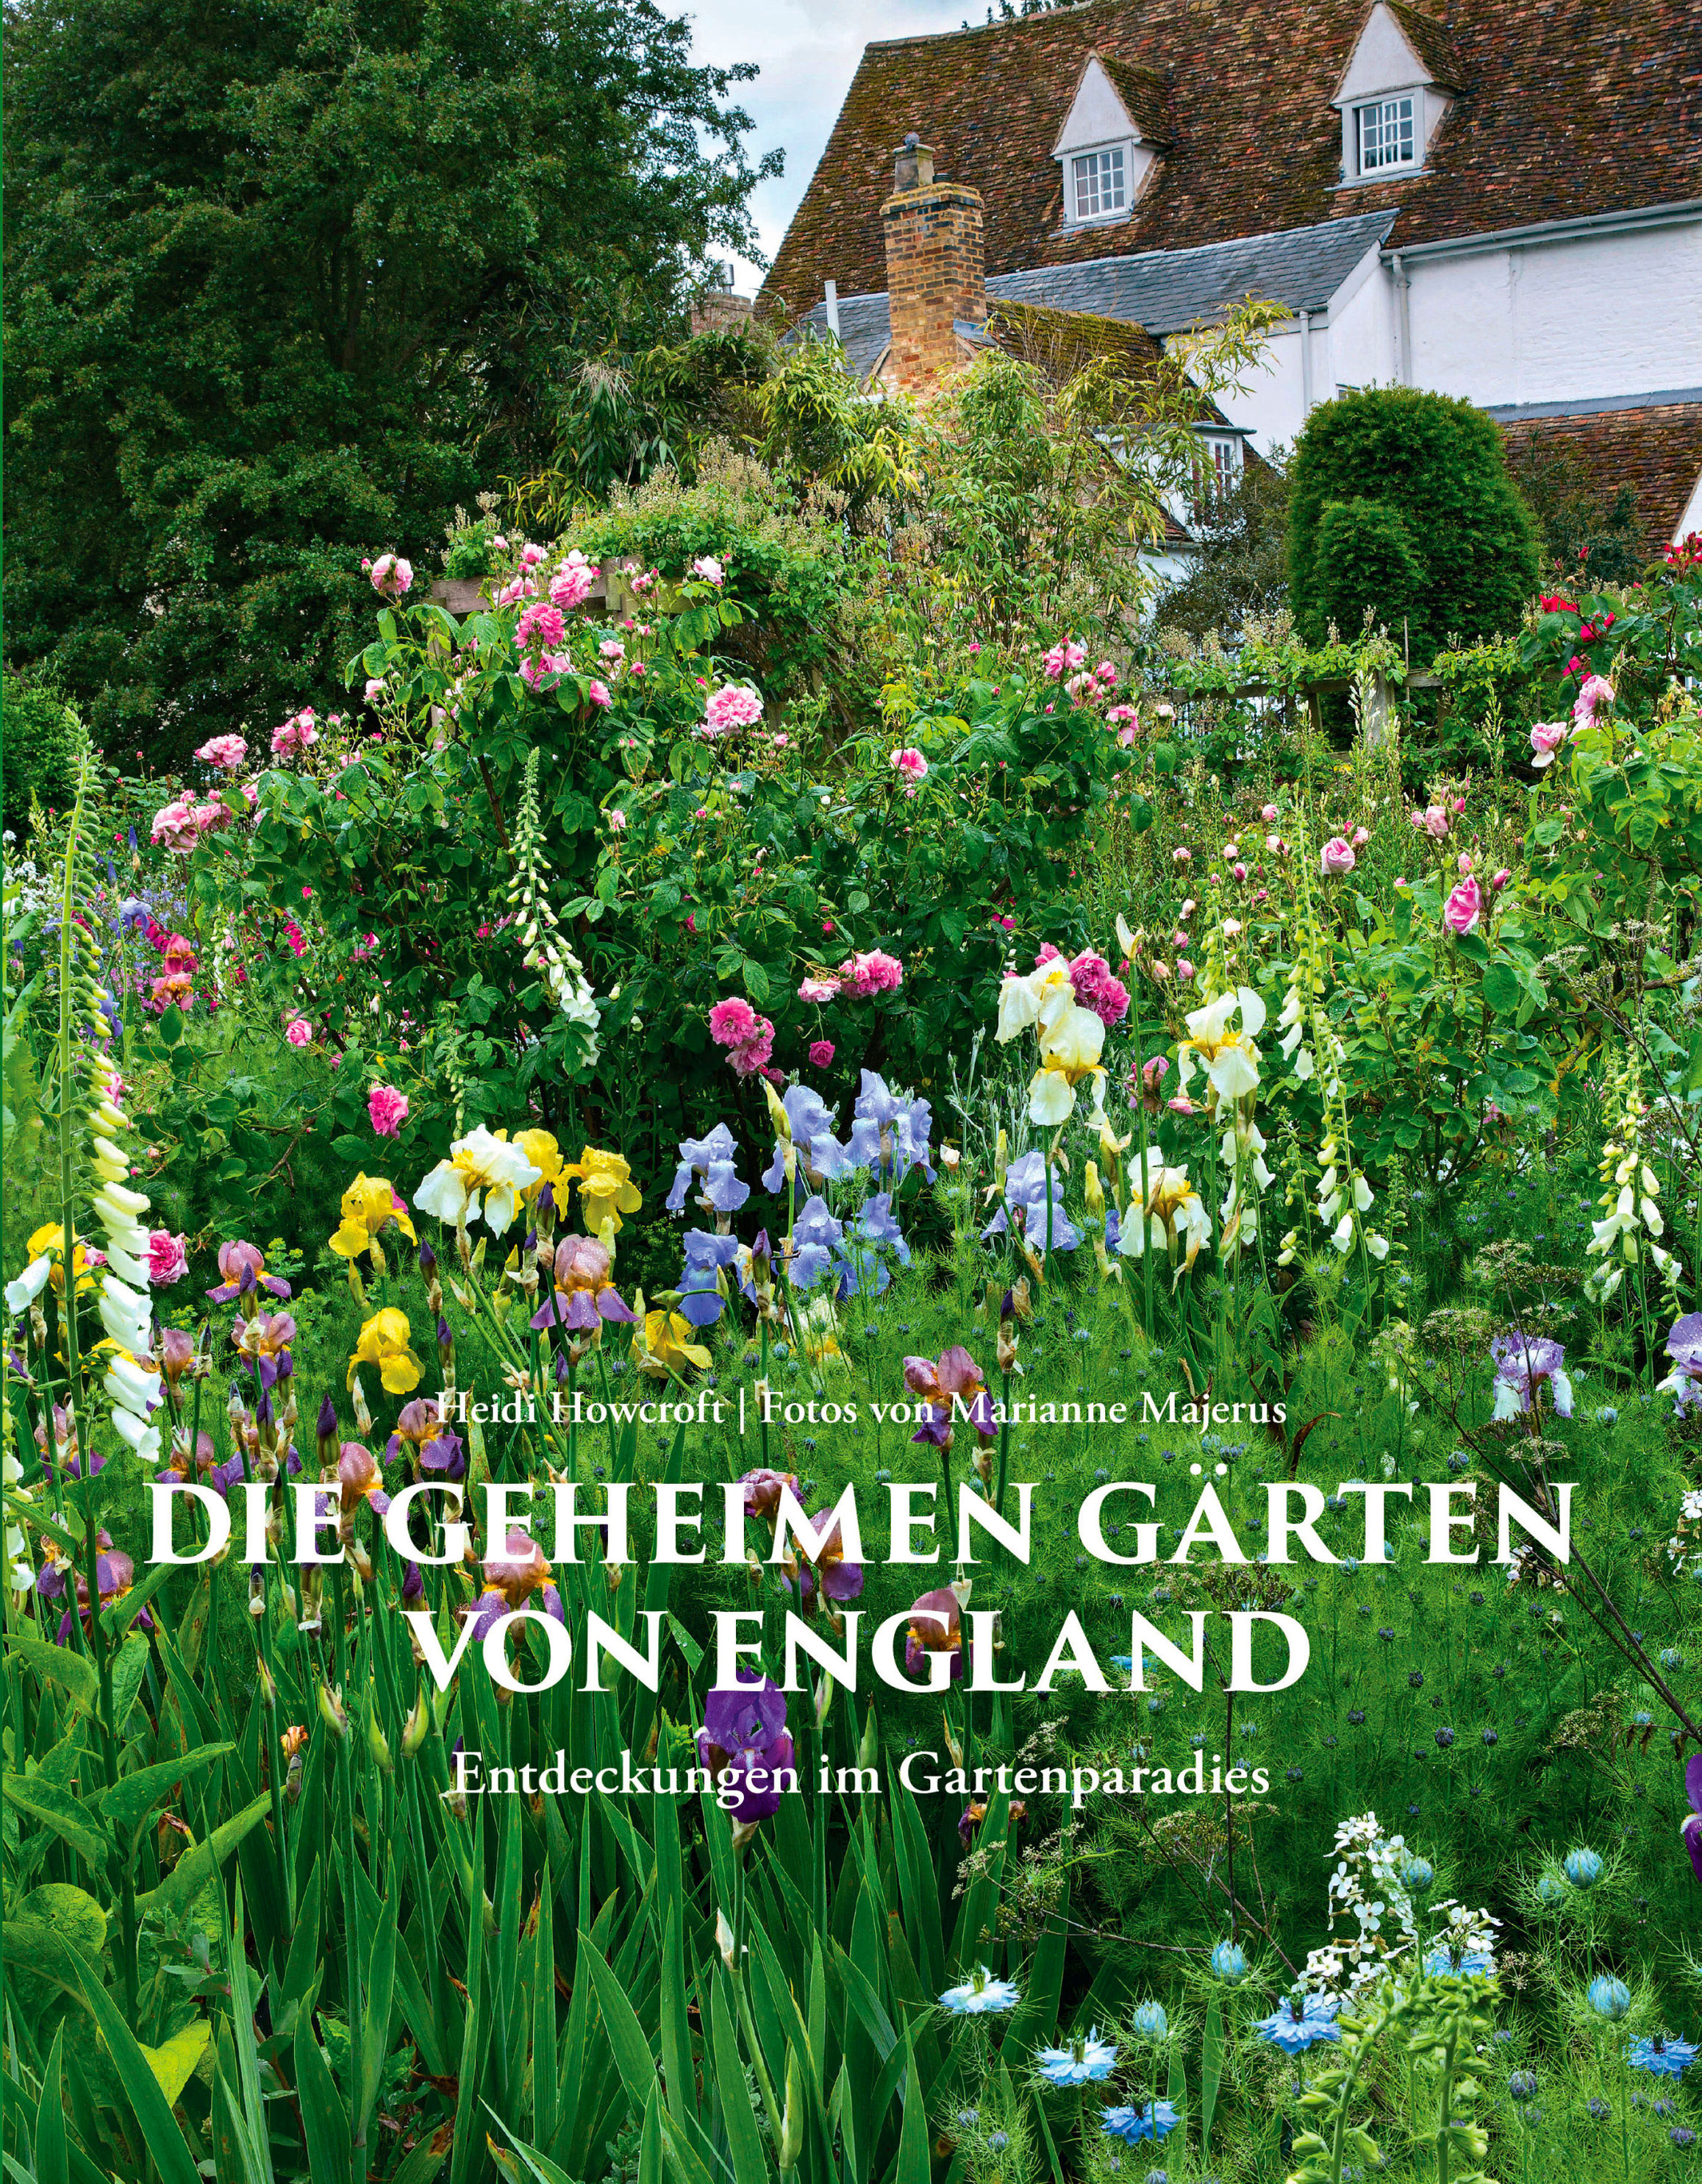 Die geheimen Gärten von England Buch versandkostenfrei bei Weltbild.de